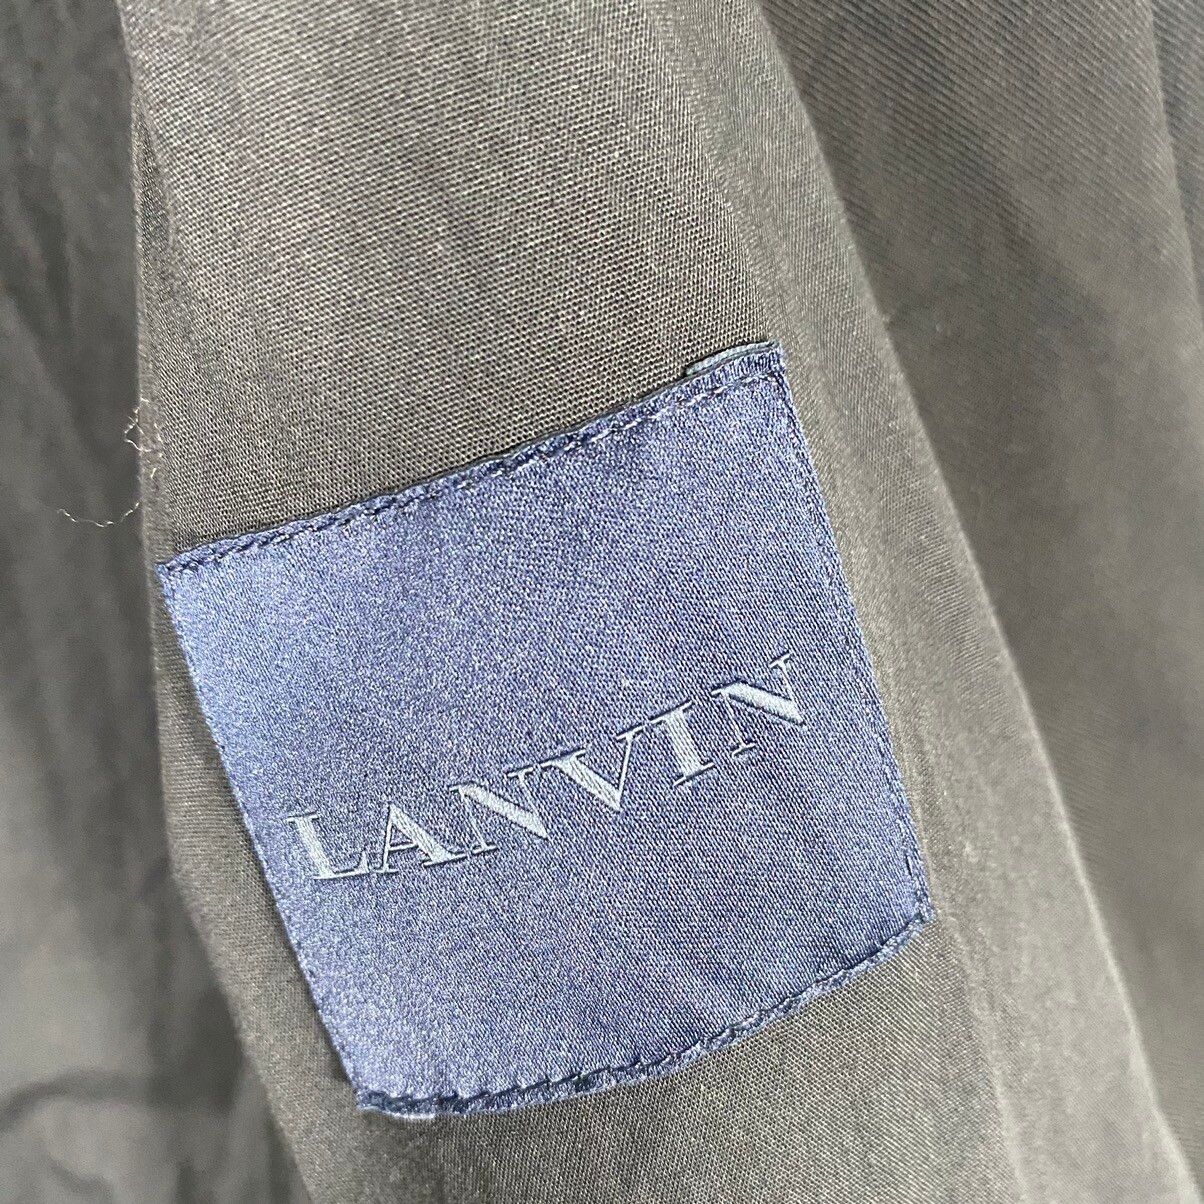 Vintage Lanvin Harrington Jacket Zipper 46 Size - 8